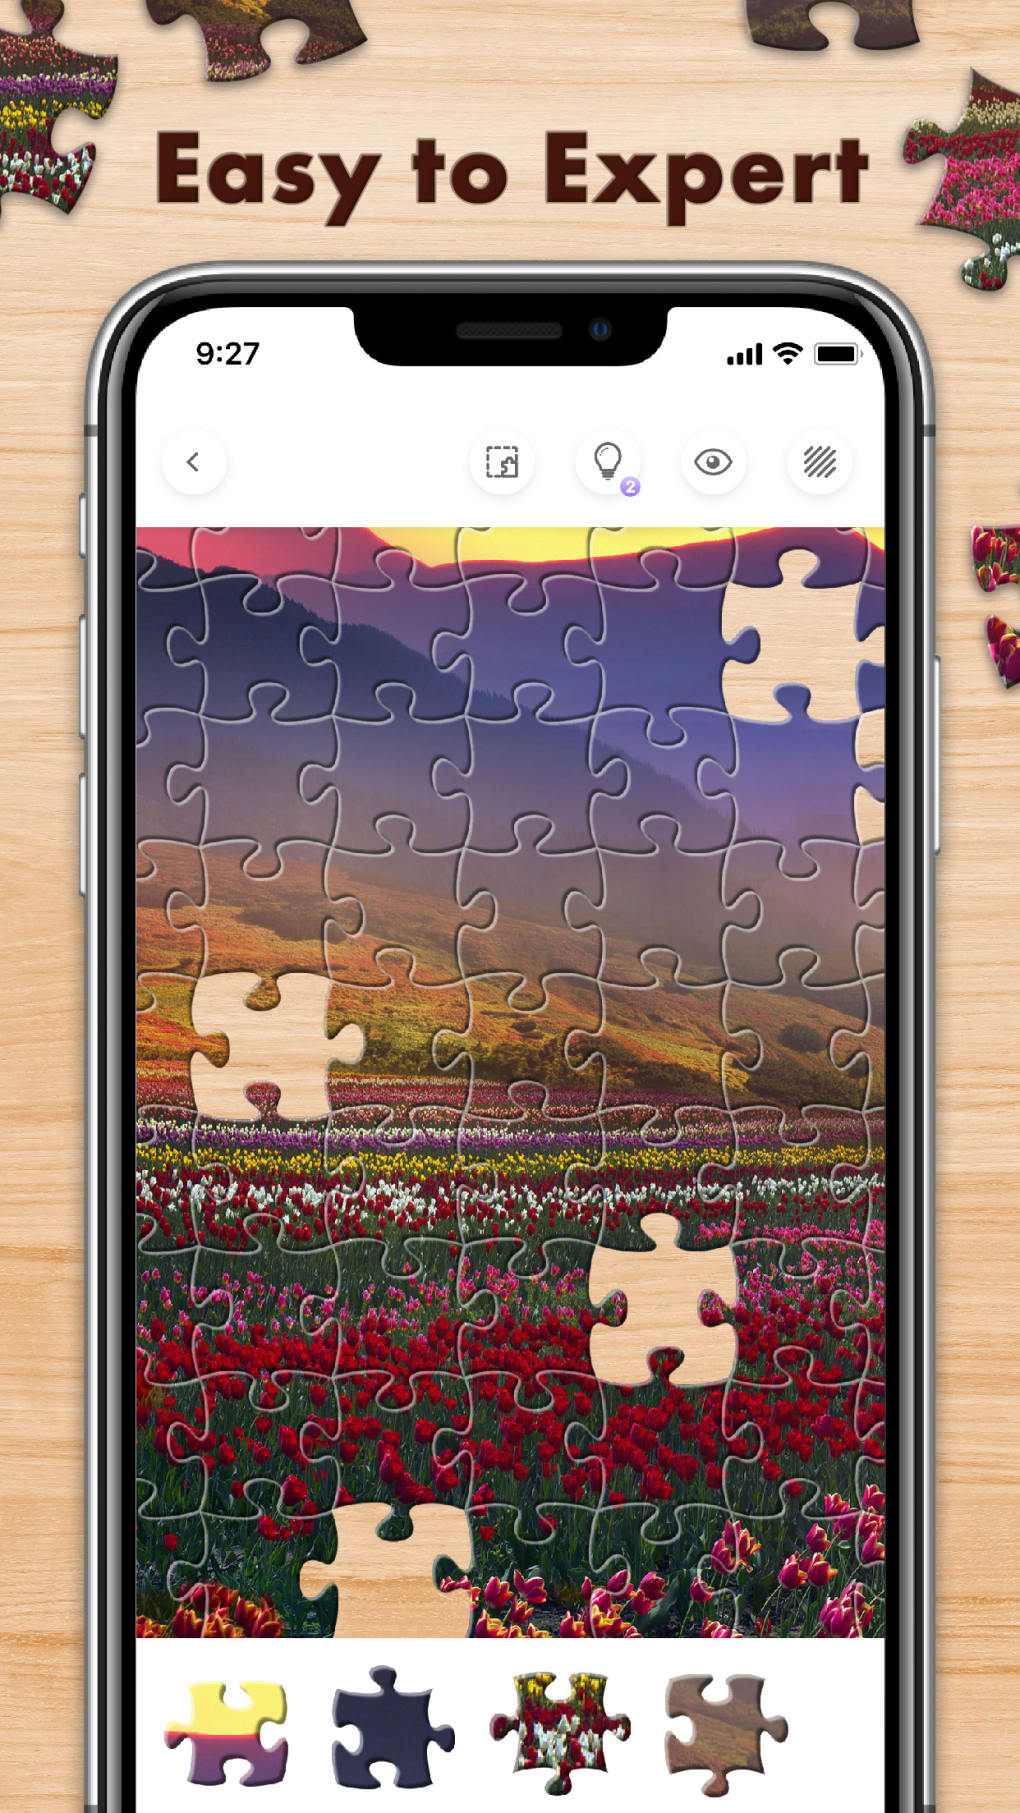 Jigsawscapes® - Quebra-cabeça APK (Download Grátis) - Android Jogo